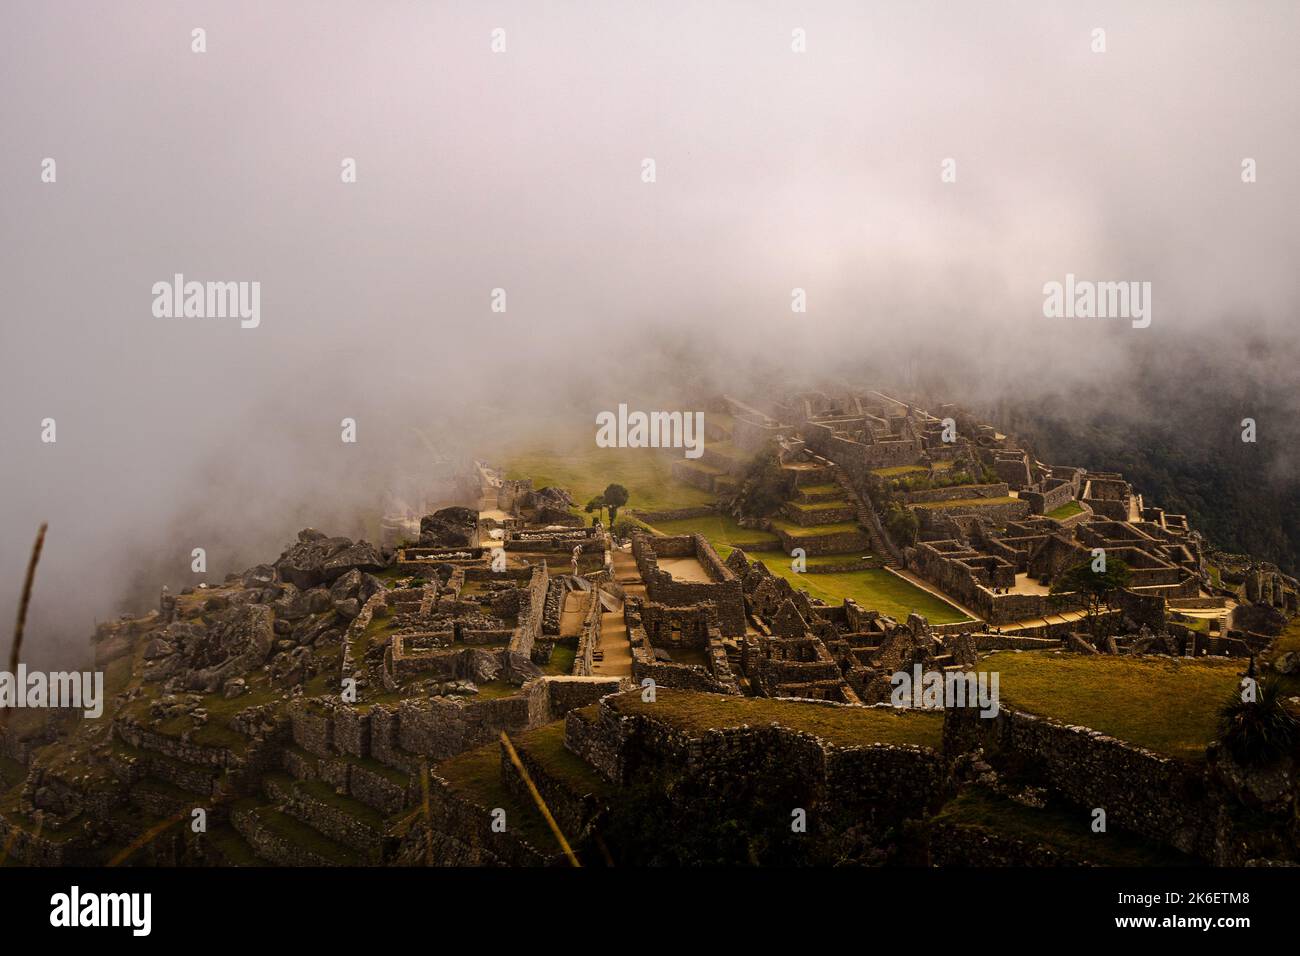 Retour dans l'ancienne civilisation découverte du Machu Picchu. Prise lors d'une journée nuageuse, cette image tente de maîtriser une vie passée. Banque D'Images